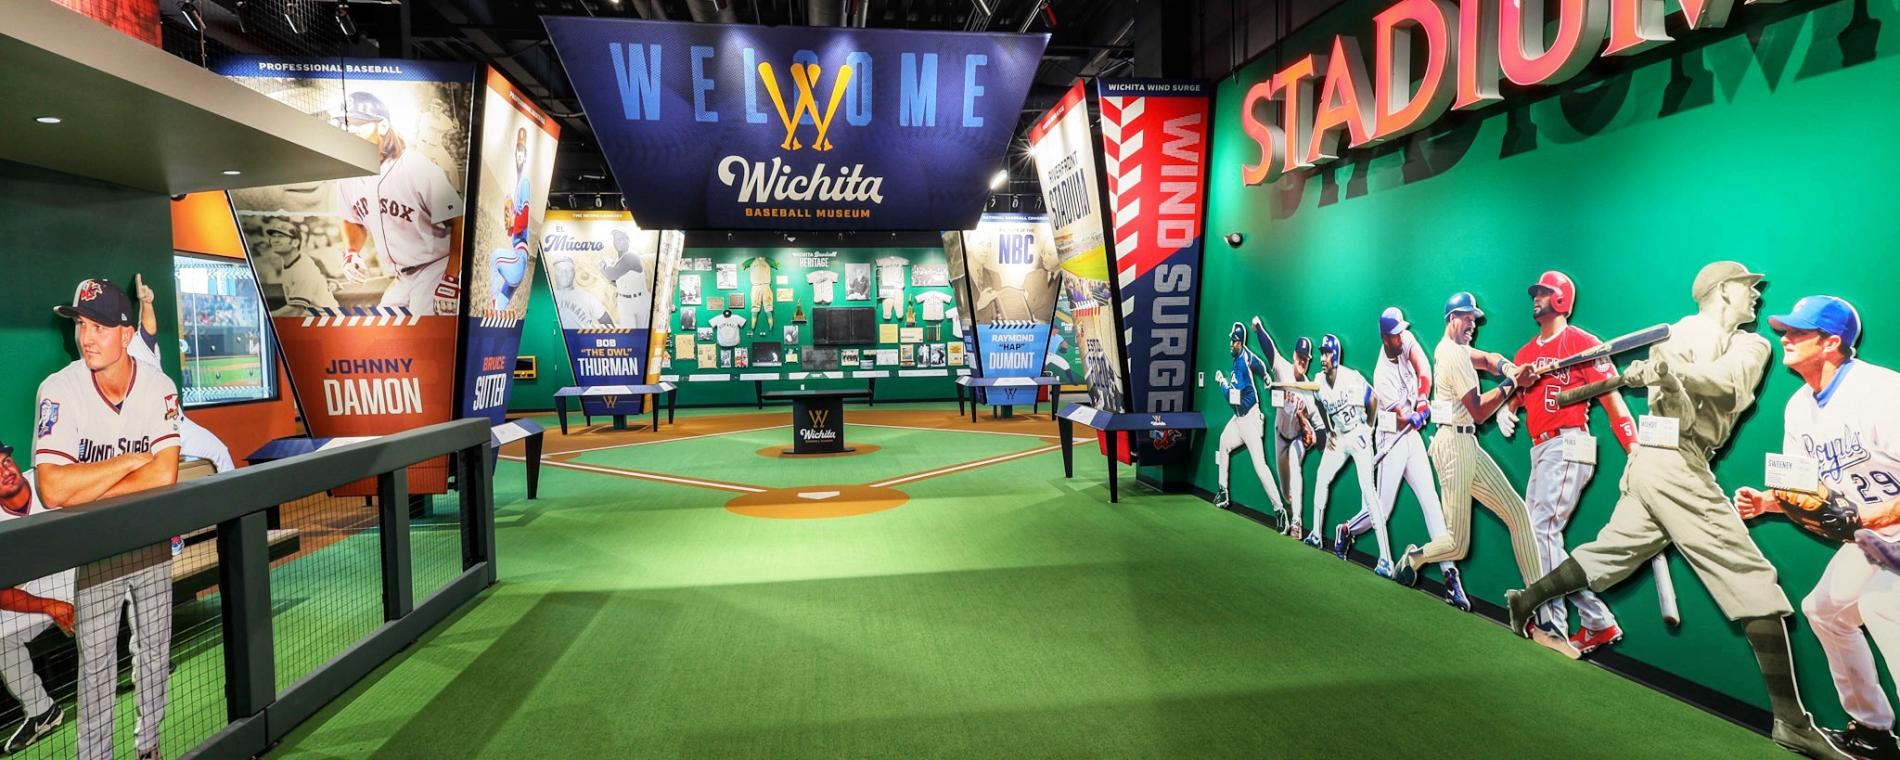 Wichita Baseball Museum_Riverfront Stadium3.jpg